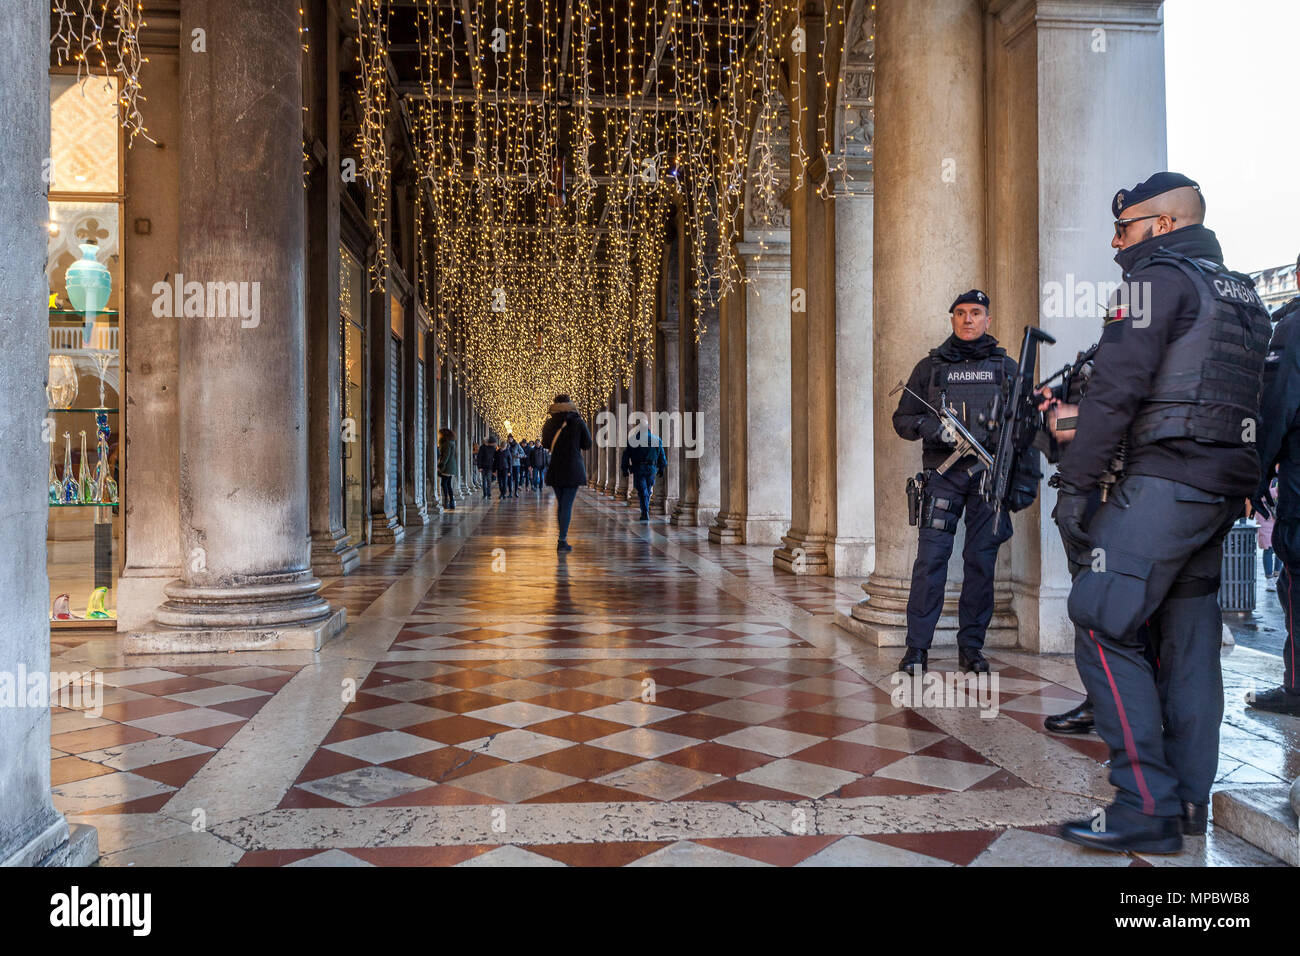 Venezia, Italia - 02 gennaio 2018: le forze di polizia di guardia in Piazza San Marco colonnato. Si tratta di un anti-terrorismo service durante il periodo di Natale Foto Stock